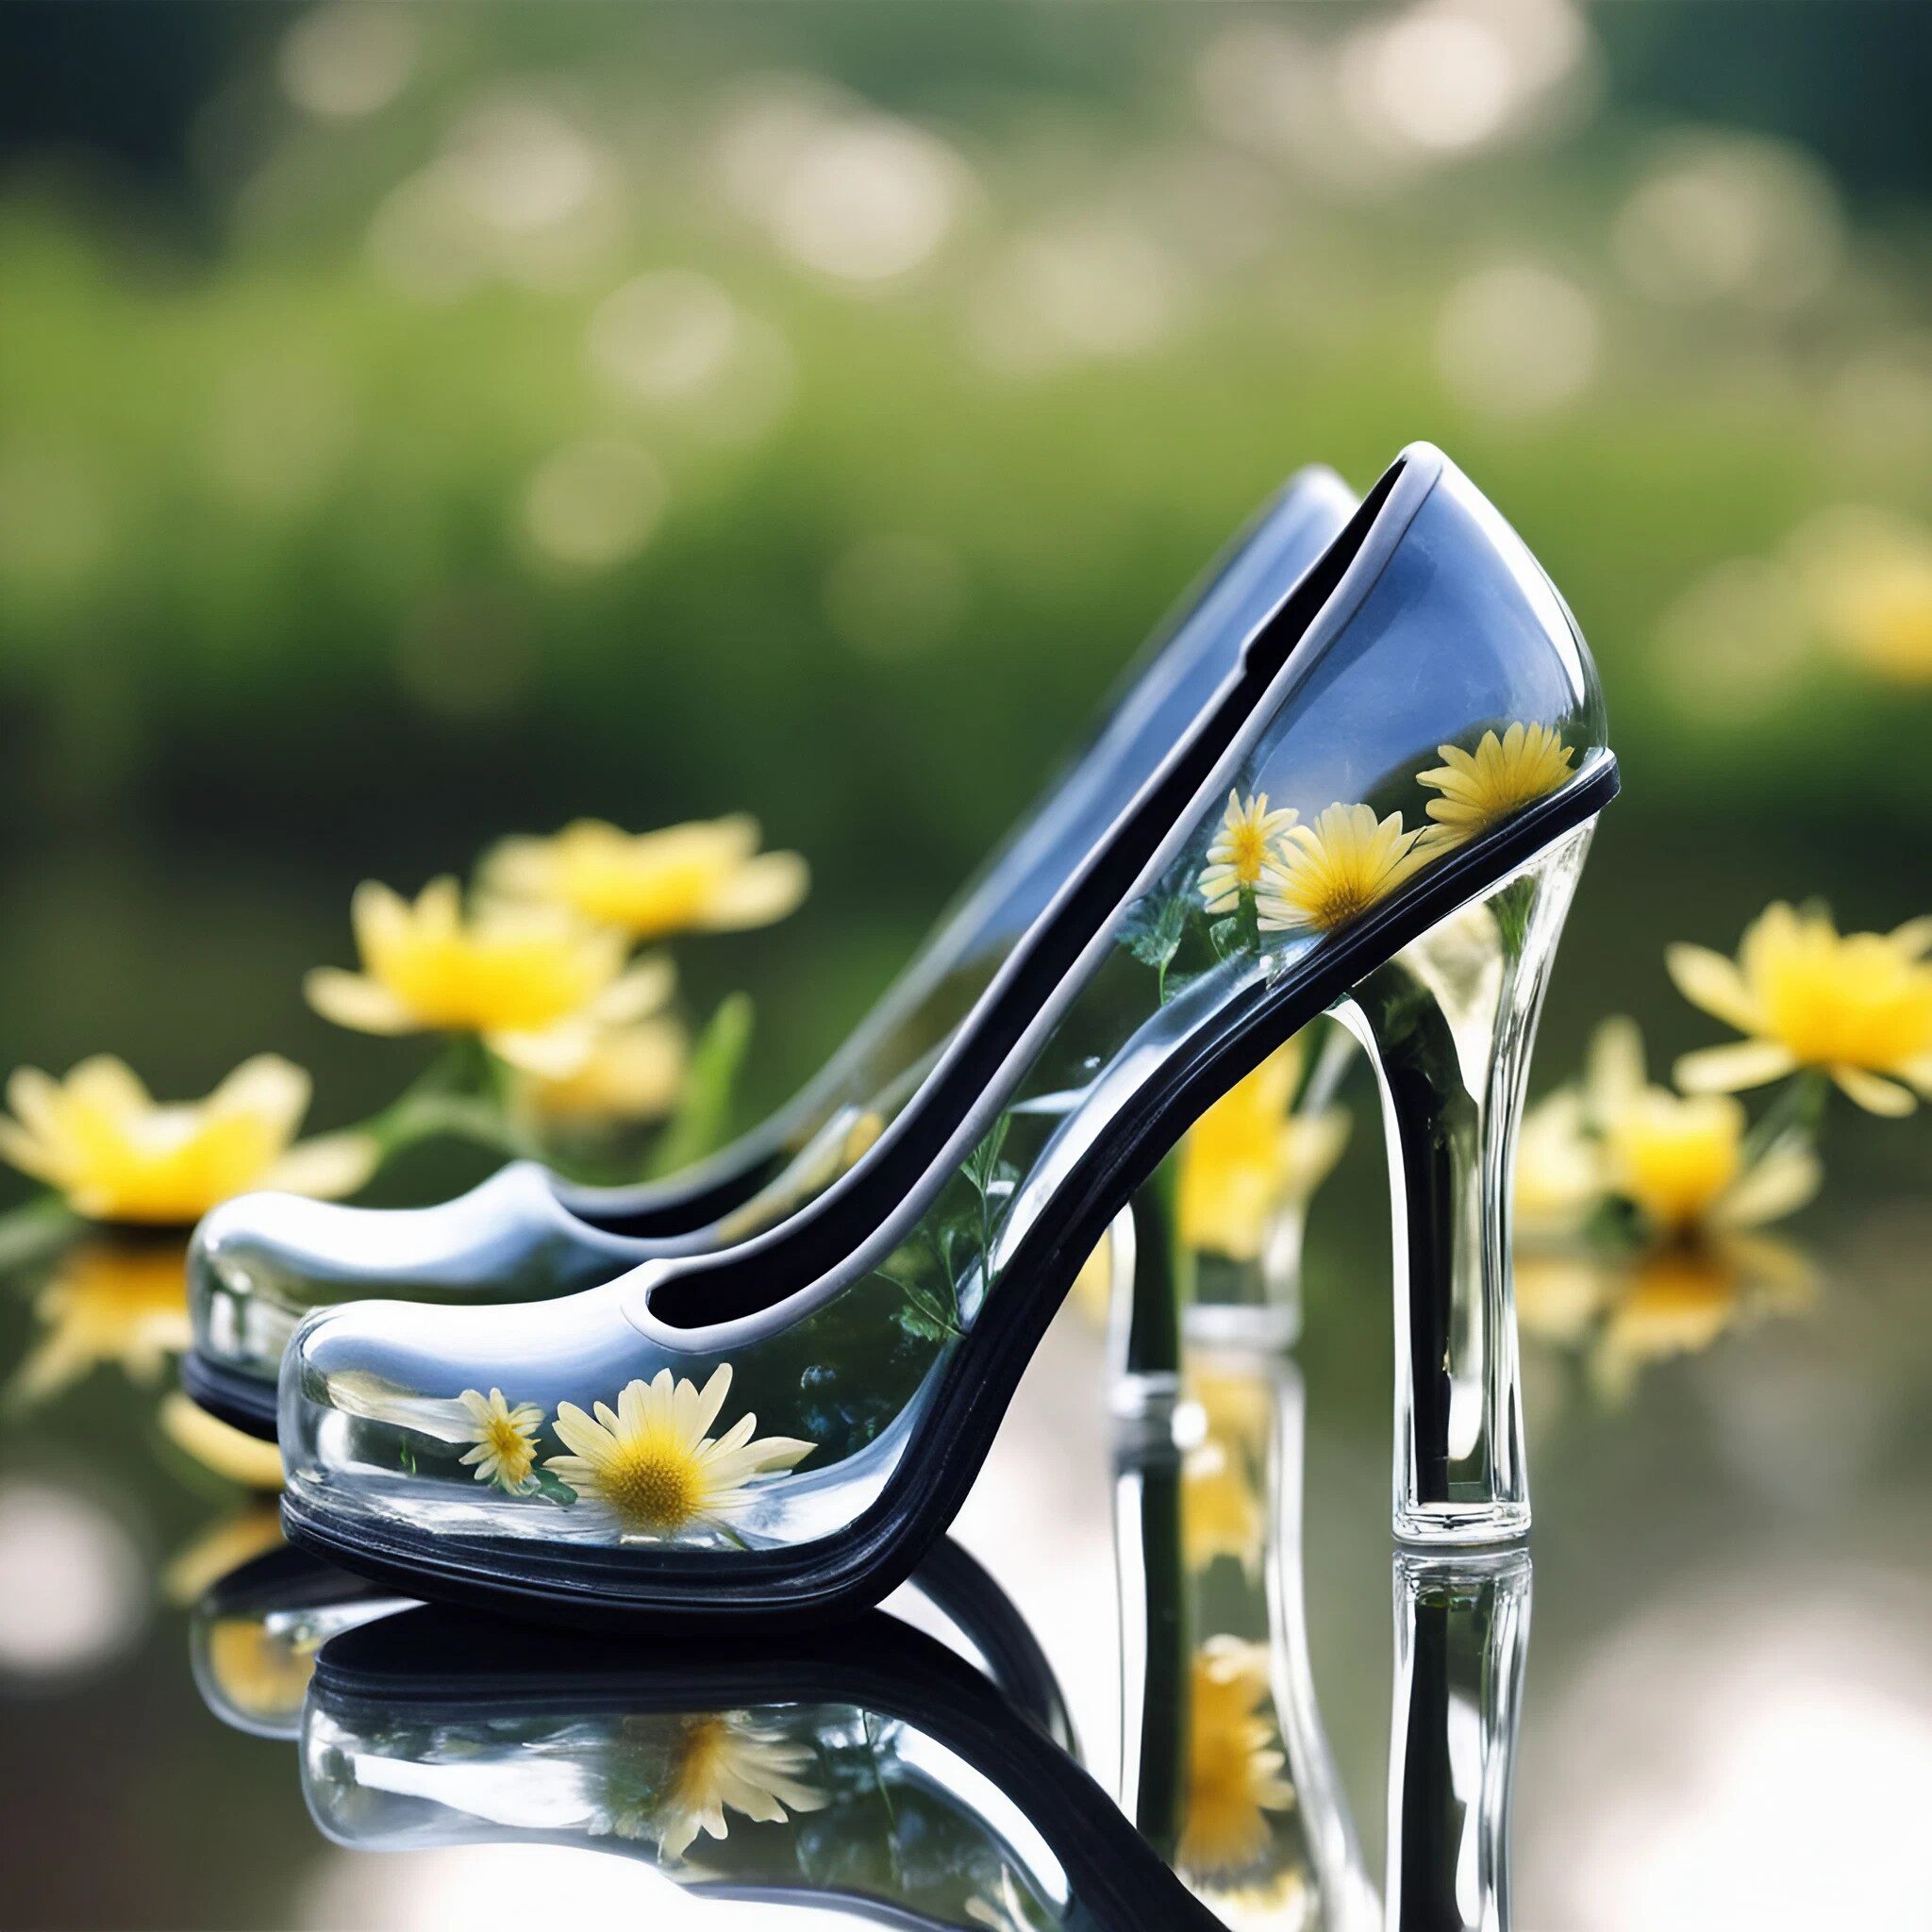 透明でかわいいガラスのシンデレラ風のハイヒールと美しい花々の自然の無料写真画像素材